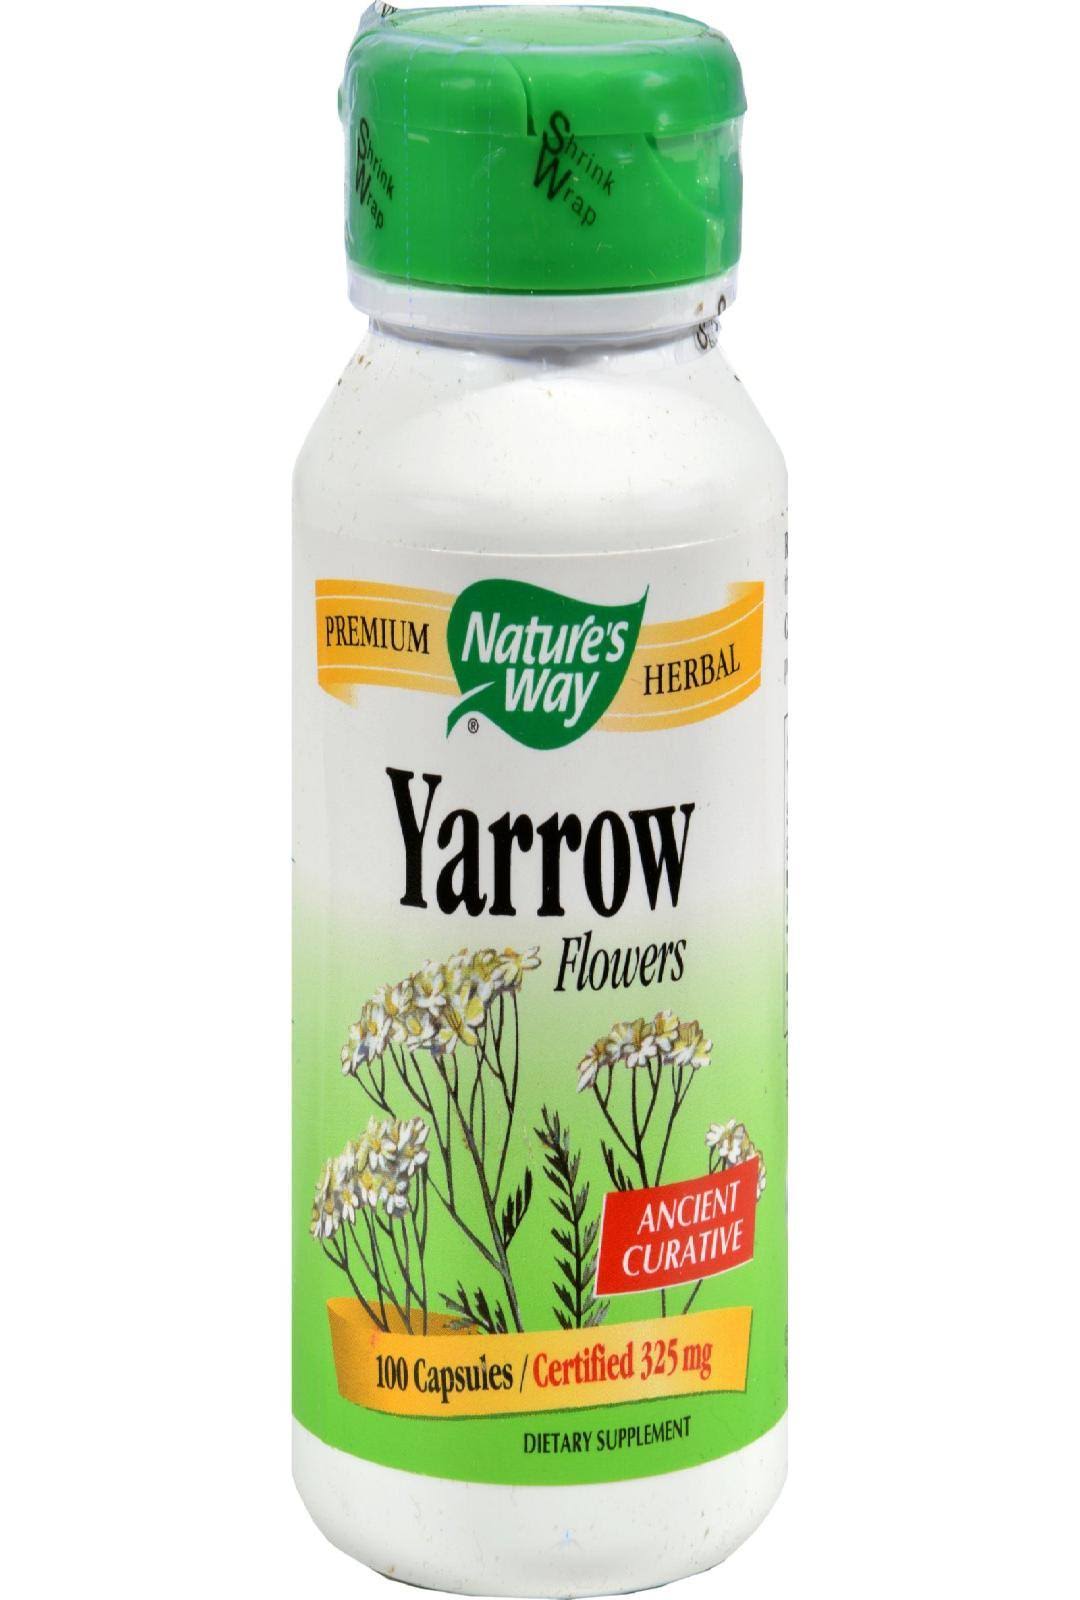 Nature's Way Yarrow Flower Dietary Supplement - 100 Capsules